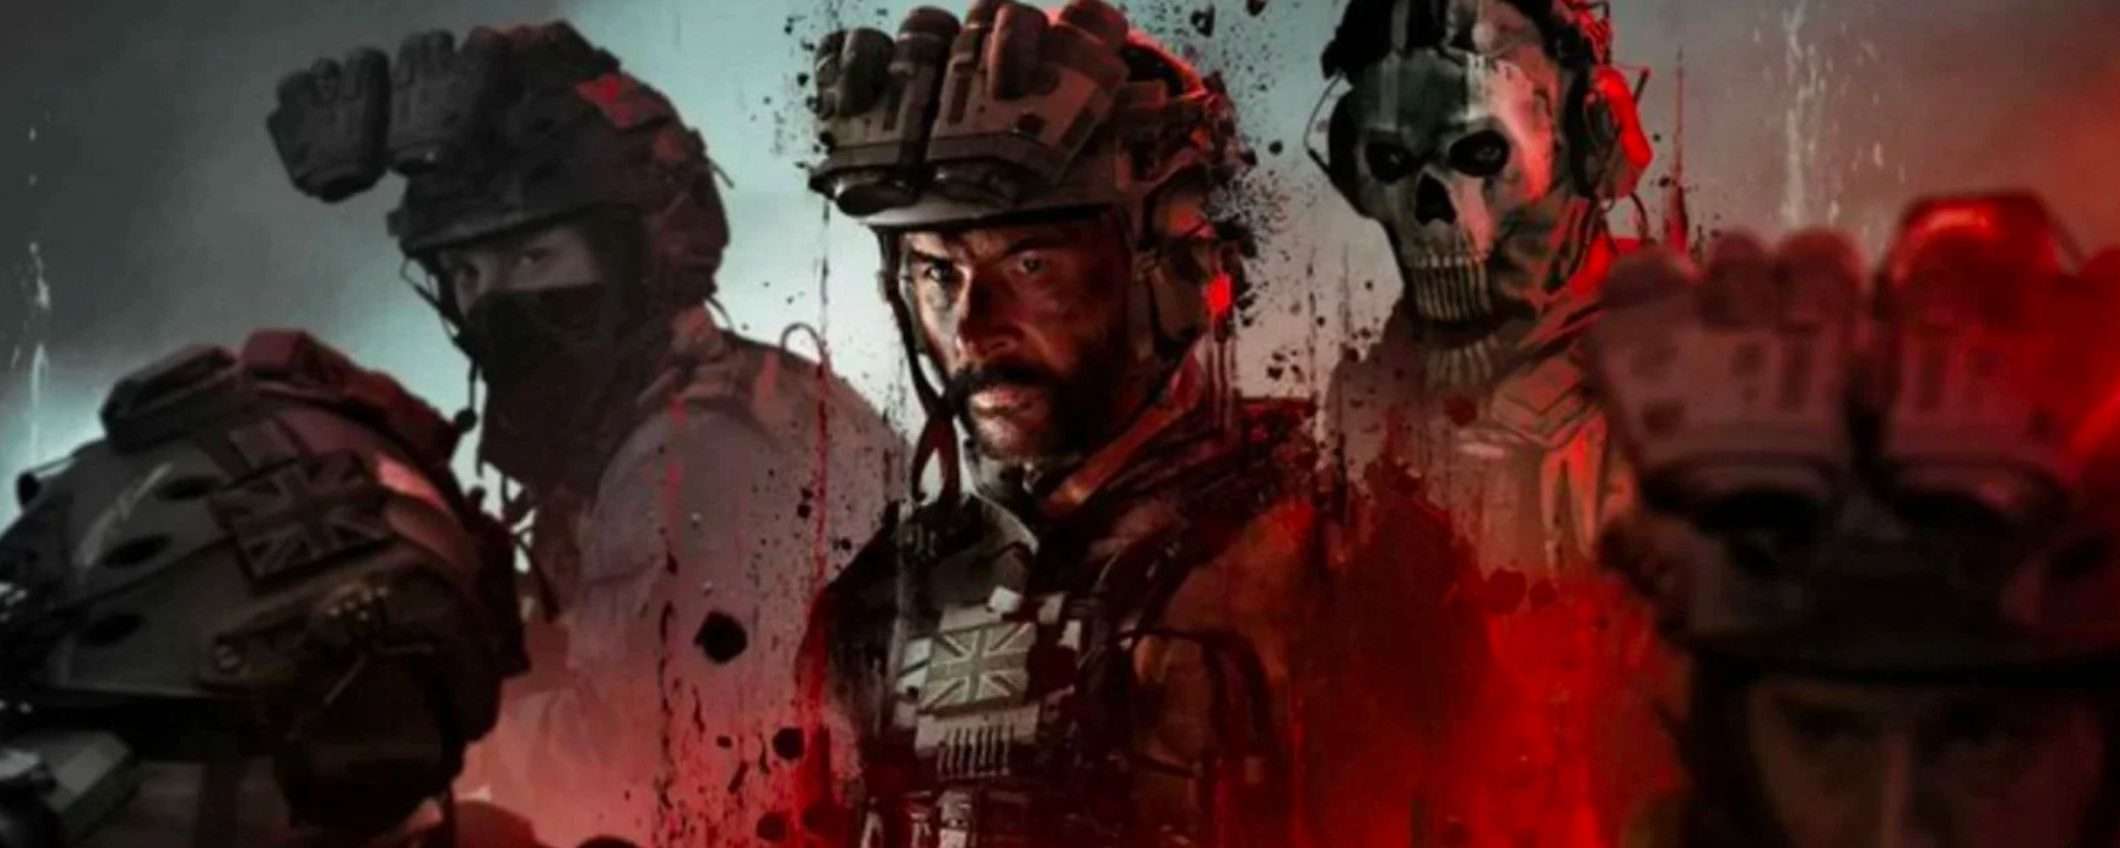 Regalati COD Modern Warfare 3 per Natale con gli sconti Kinguin